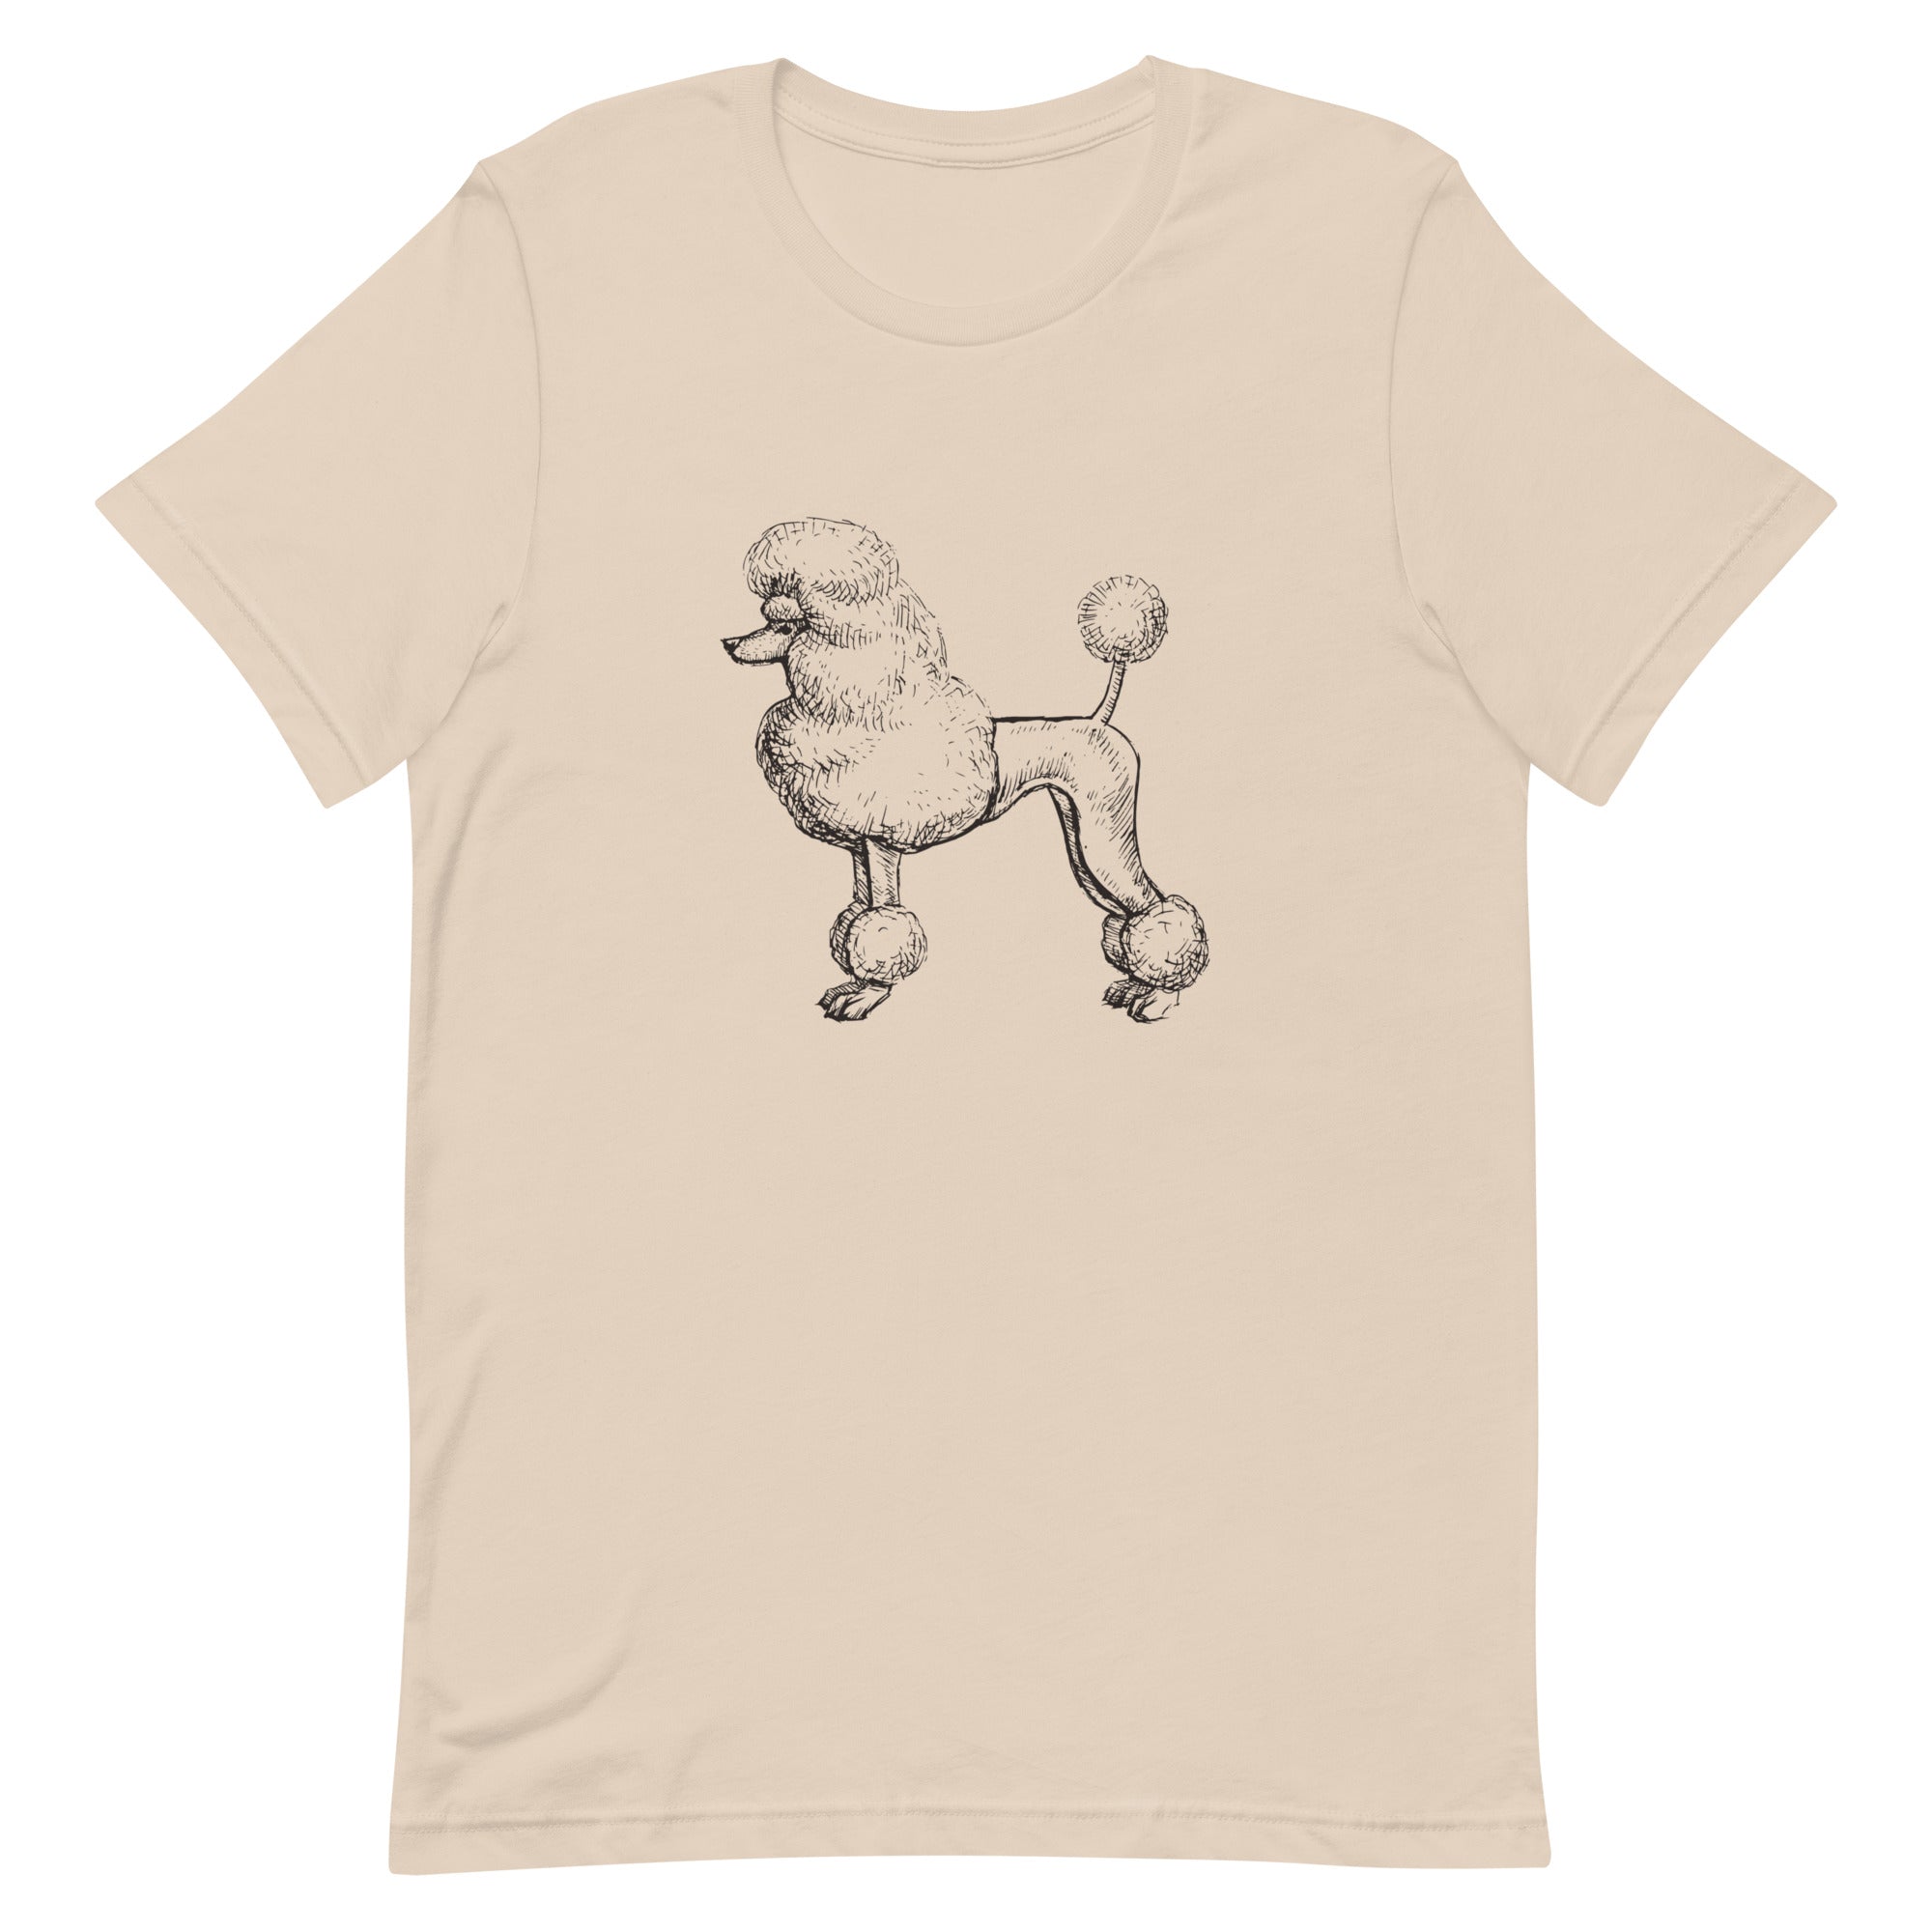 Poodle T-Shirt